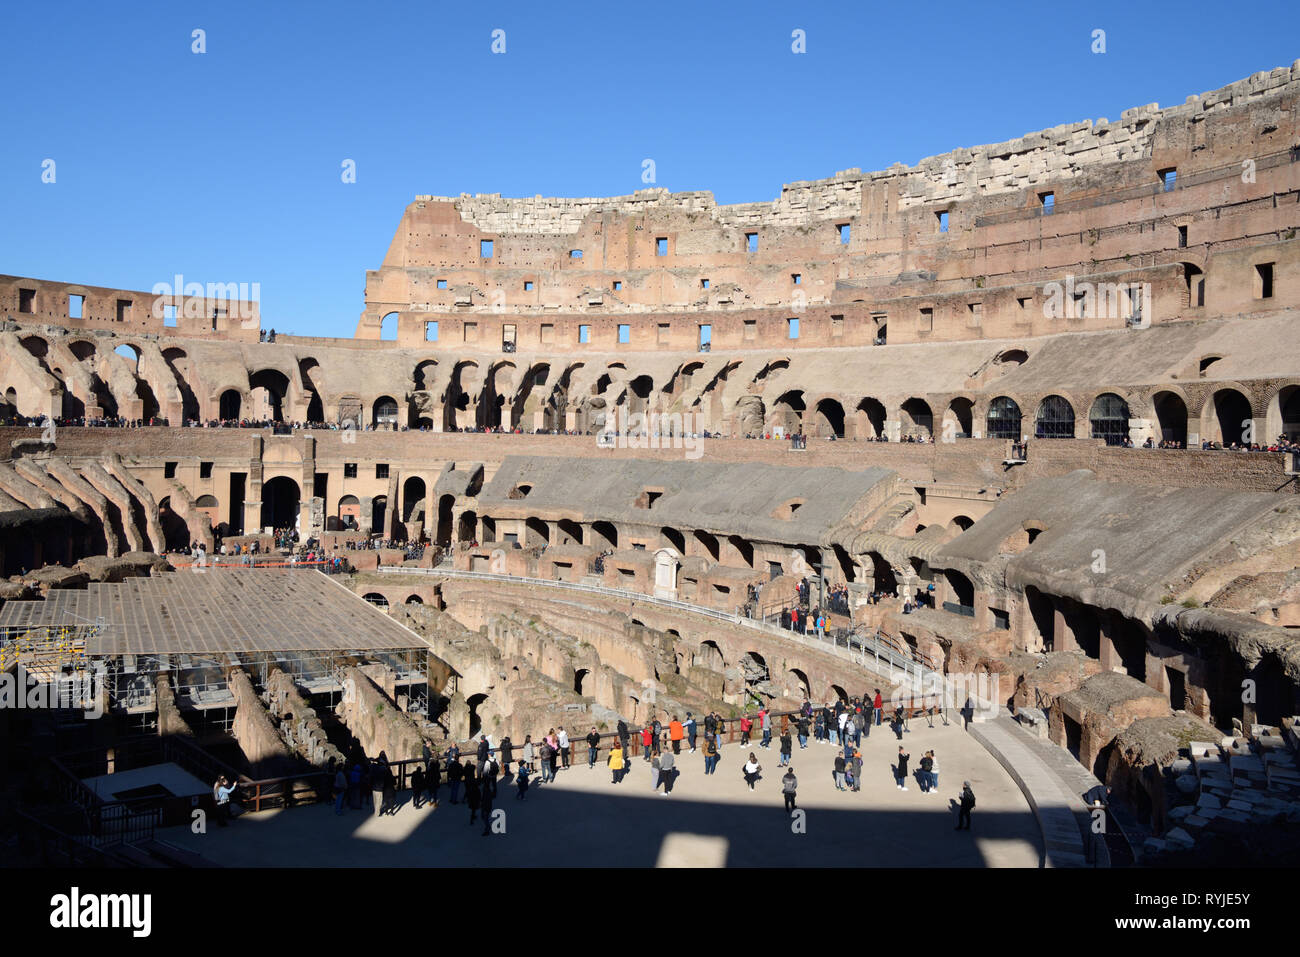 L'intérieur ou à l'intérieur de l'amphithéâtre du Colisée, Colisée, l'amphithéâtre Flavien ou AD 70-80Rome Italie Banque D'Images